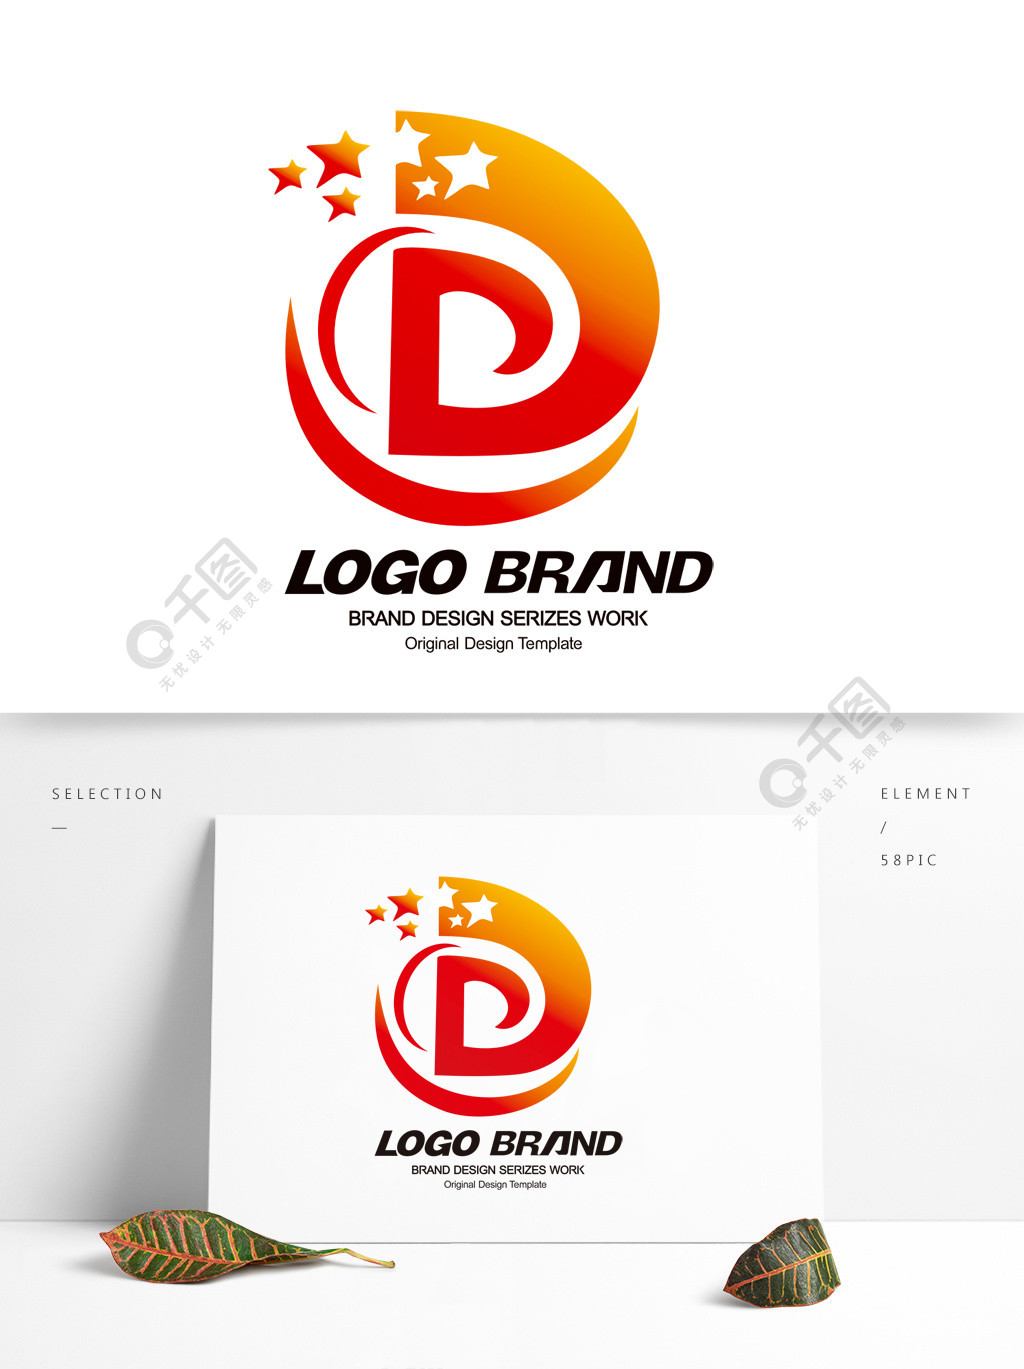 创意红黄d字母星光logo公司标志设计2年前发布